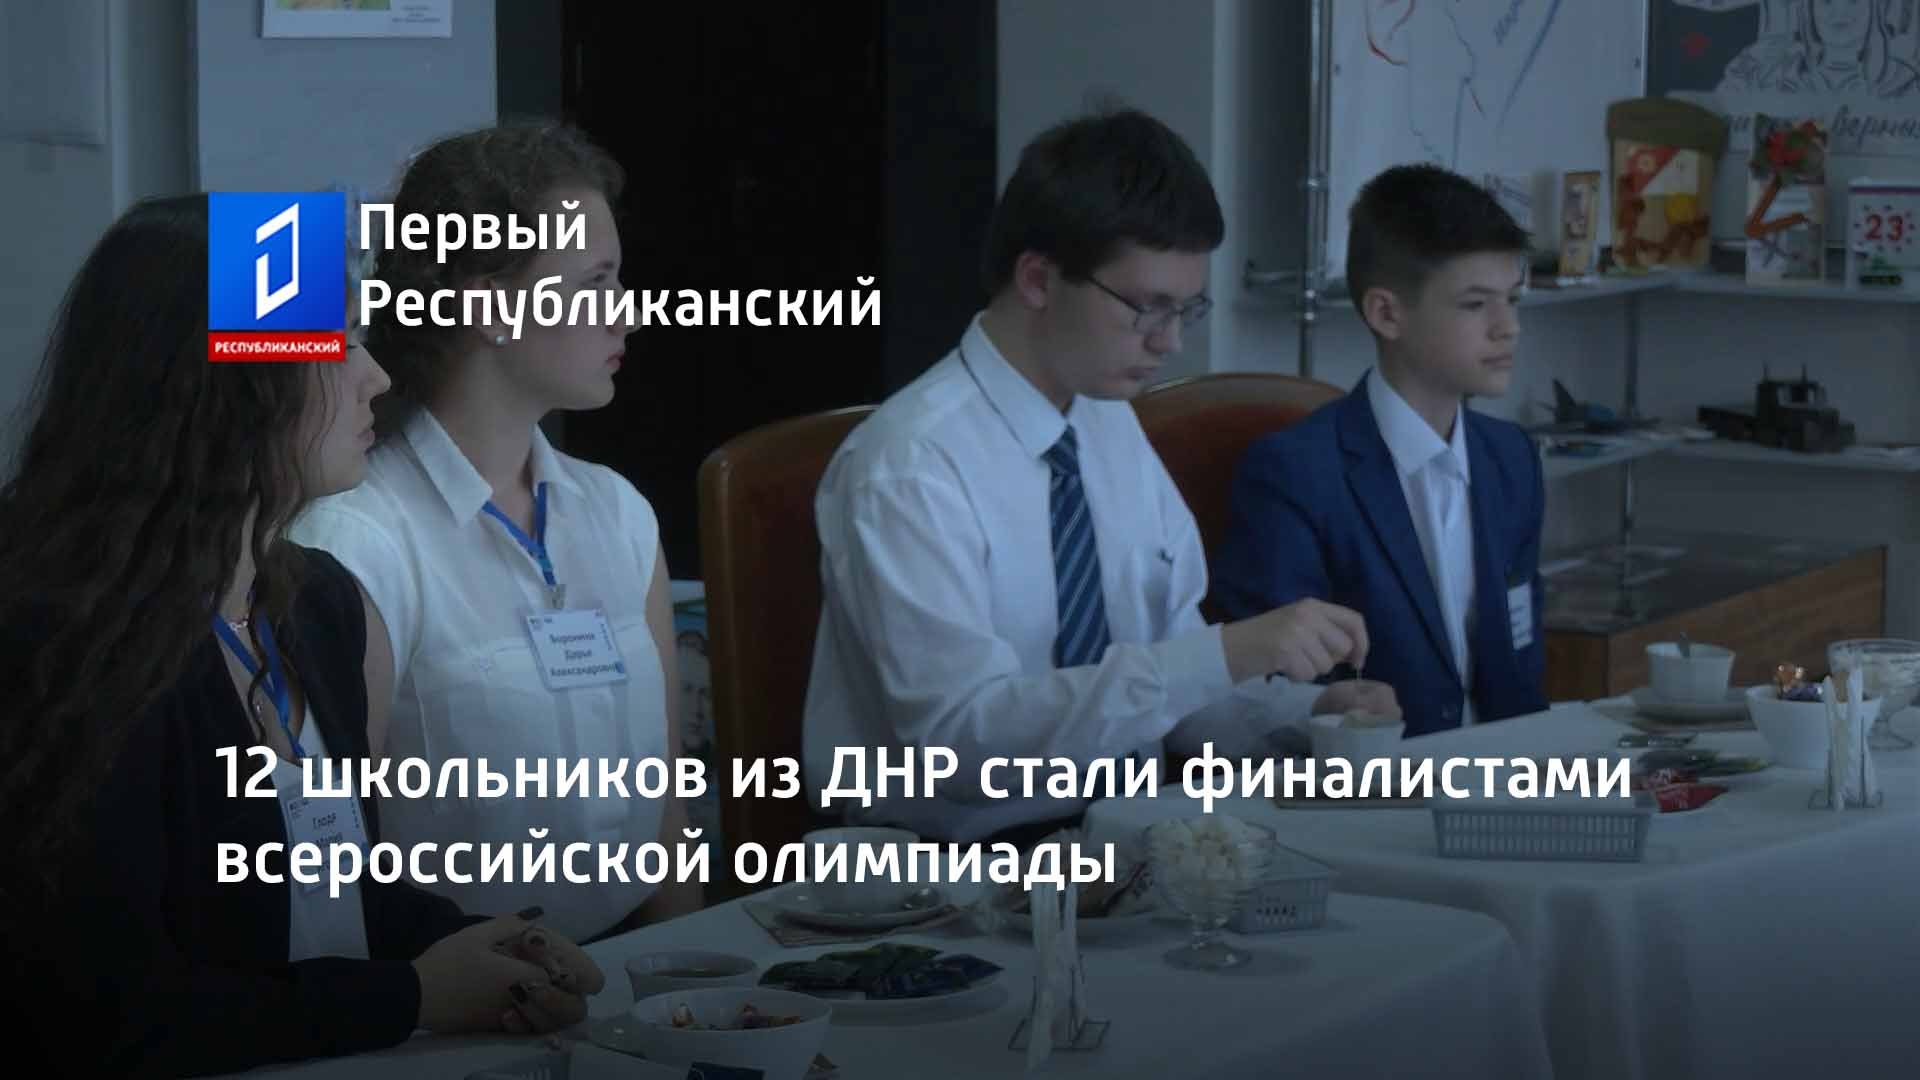 12 школьников из ДНР стали финалистами всероссийской олимпиады